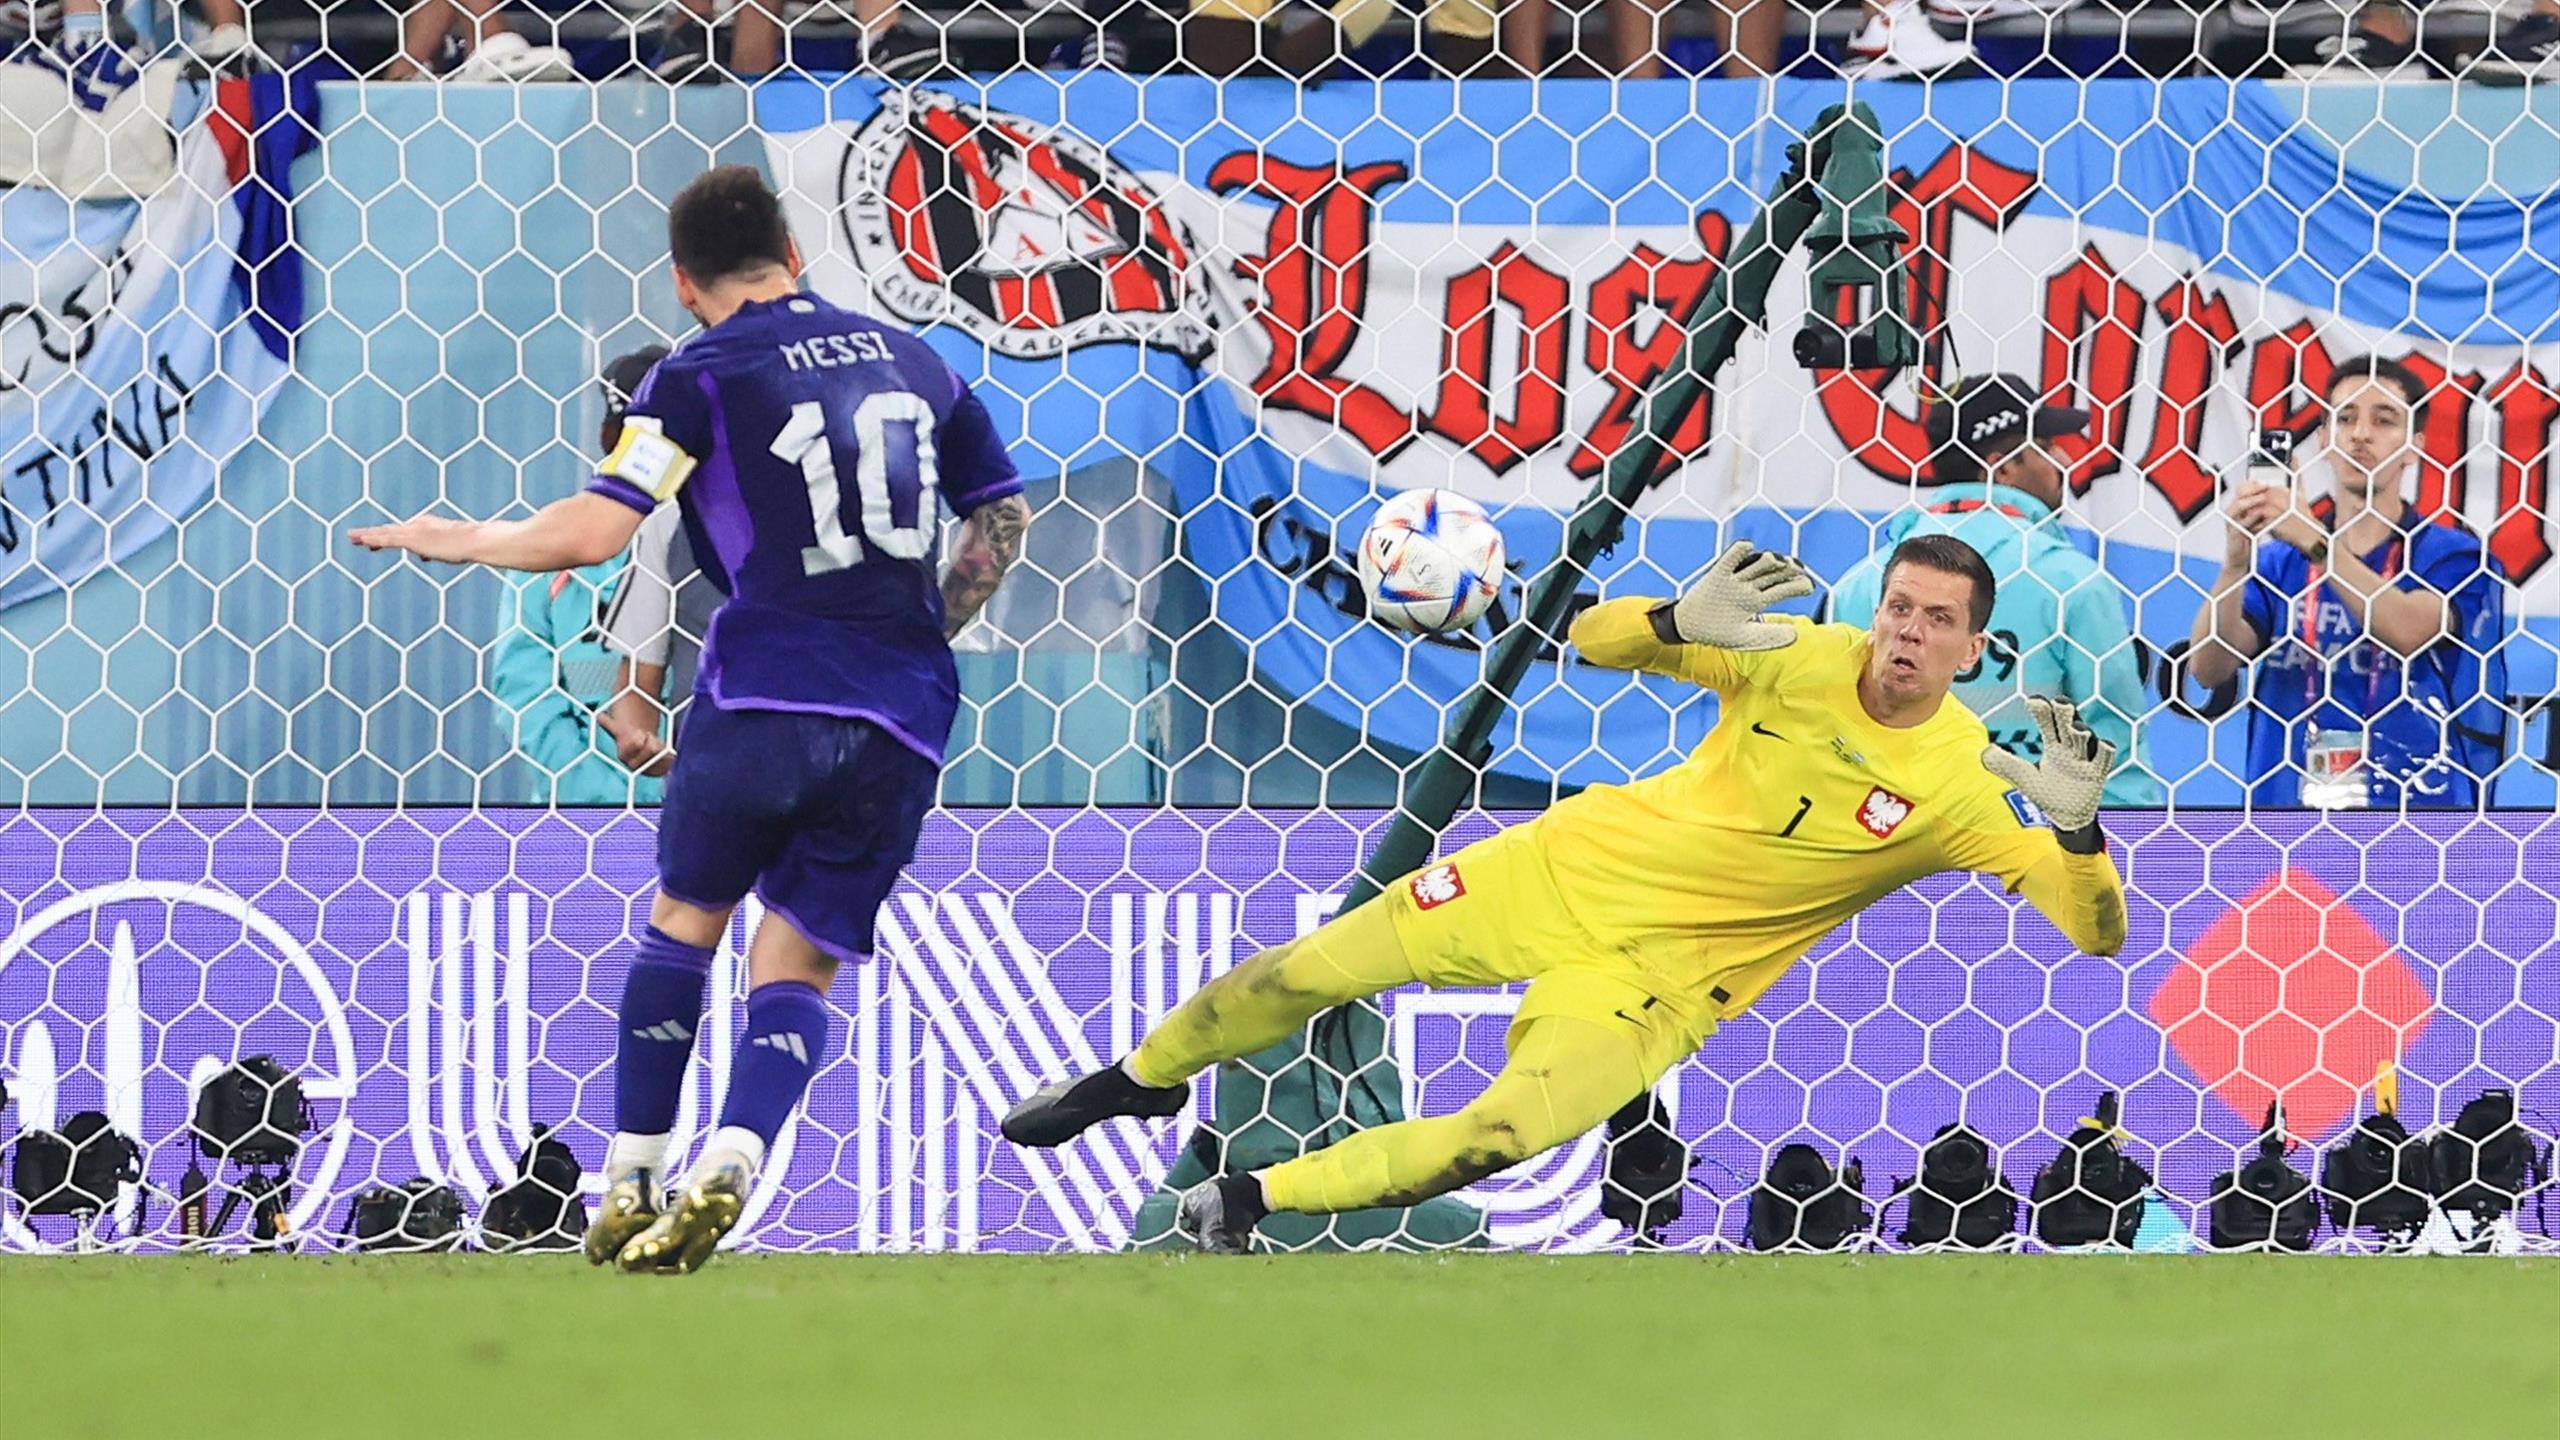 Polonia-Argentina 0-2, pagelle: Szczesny da urlo, ma non basta